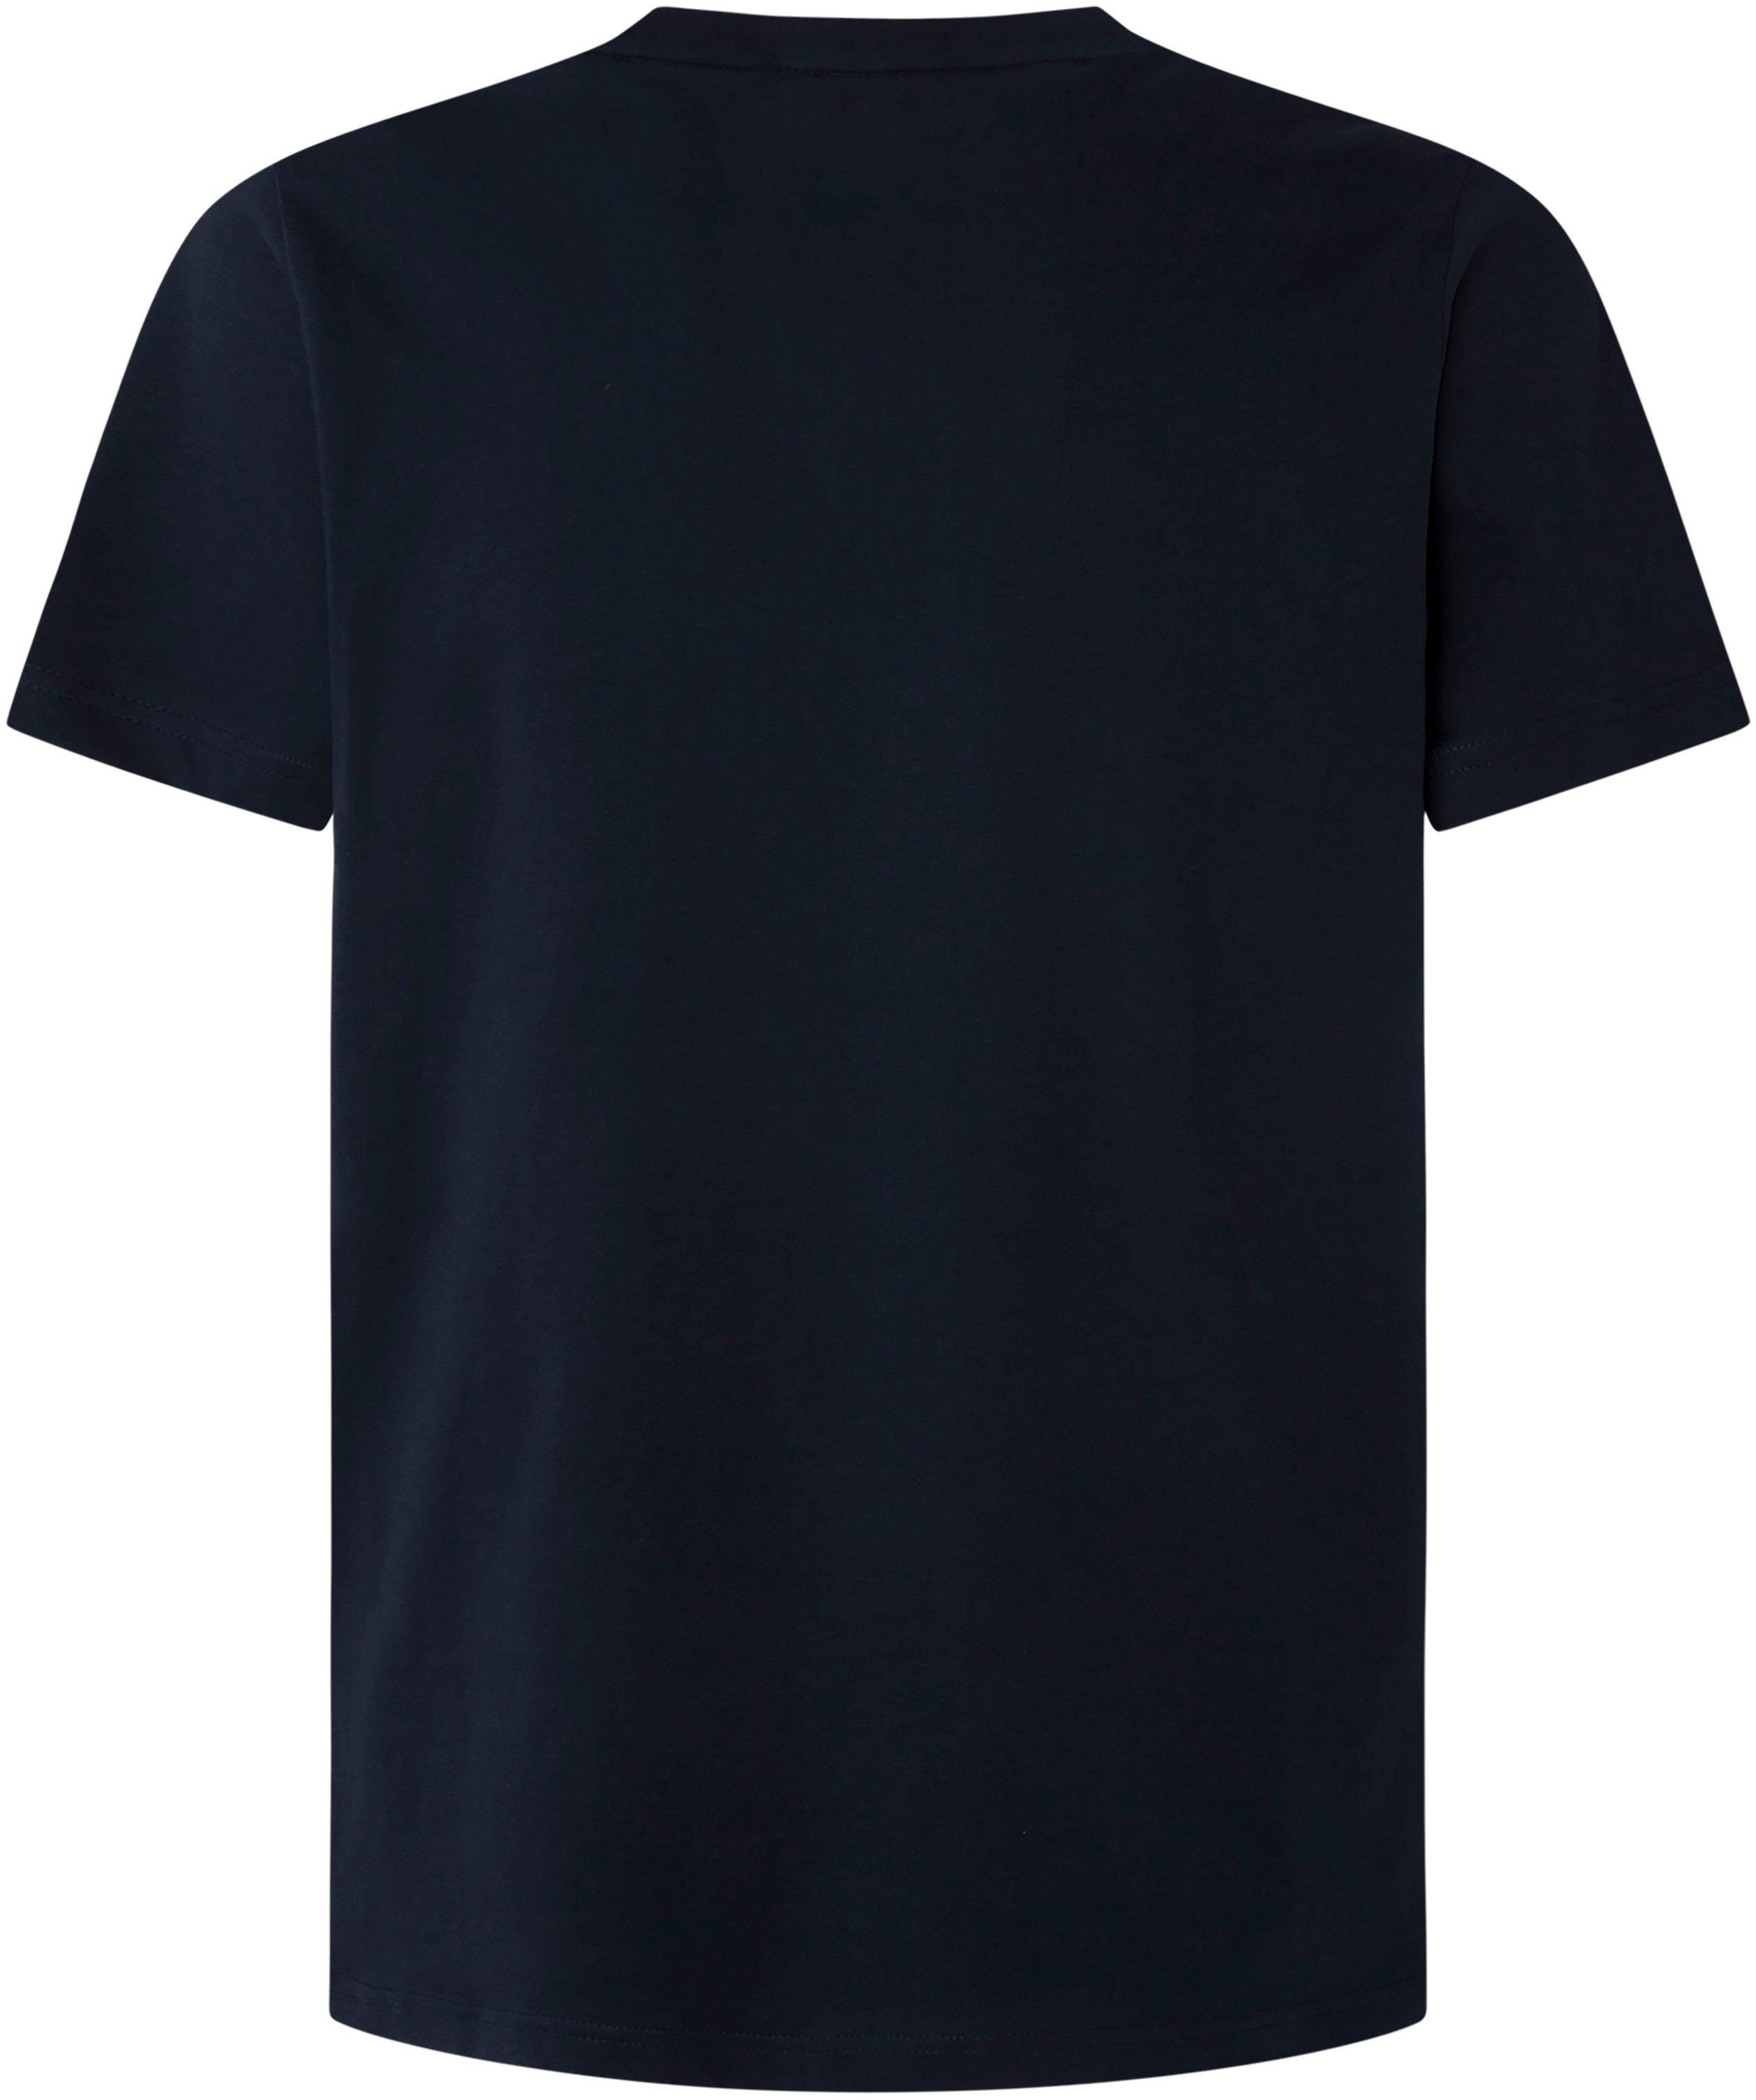 Pepe Jeans T-shirt online | OTTO shop in de